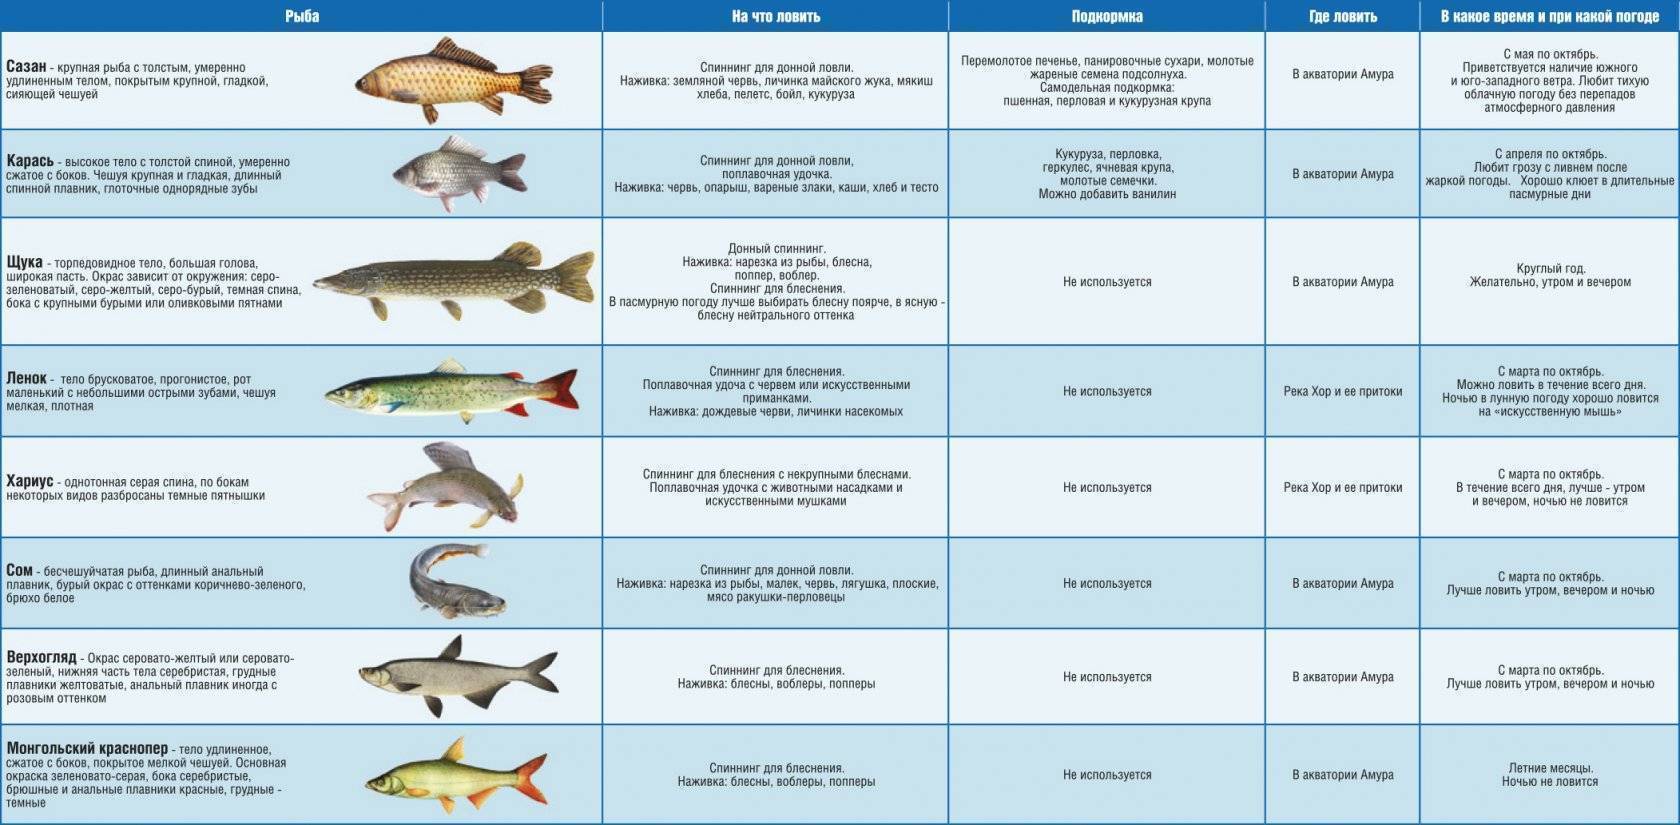 Описание вида рыбы горбуша, где водится в россии и других странах; речная или морская